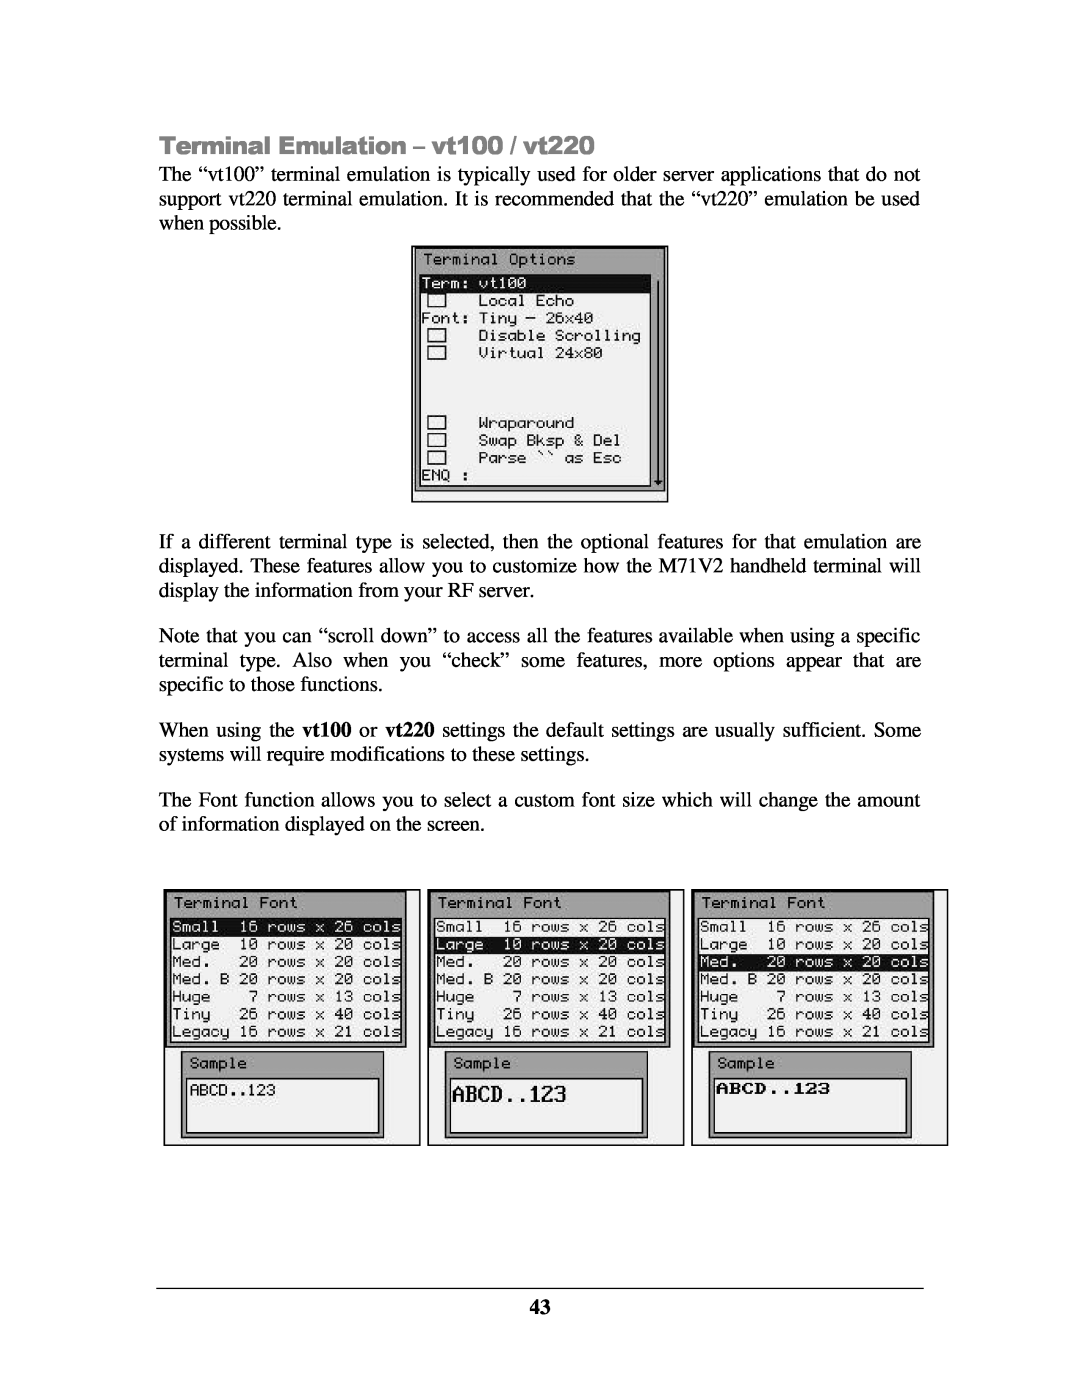 IBM M71V2 manual Terminal Emulation - vt100 / vt220 